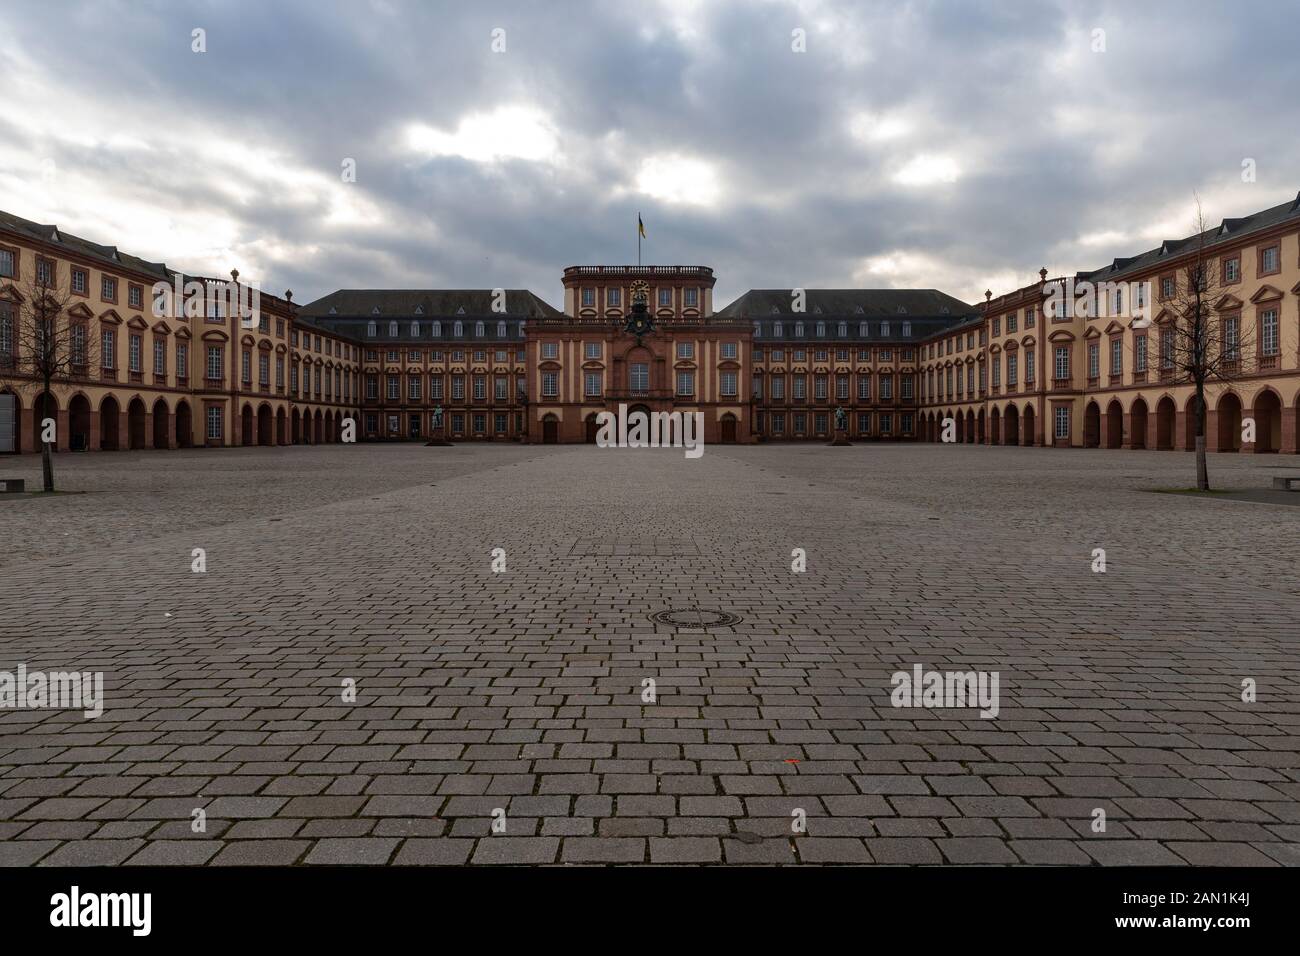 Universidad de Mannheim está trabajando en el viejo castillo barroco. Los edificios se han renovado para satisfacer las necesidades modernas. Foto de stock